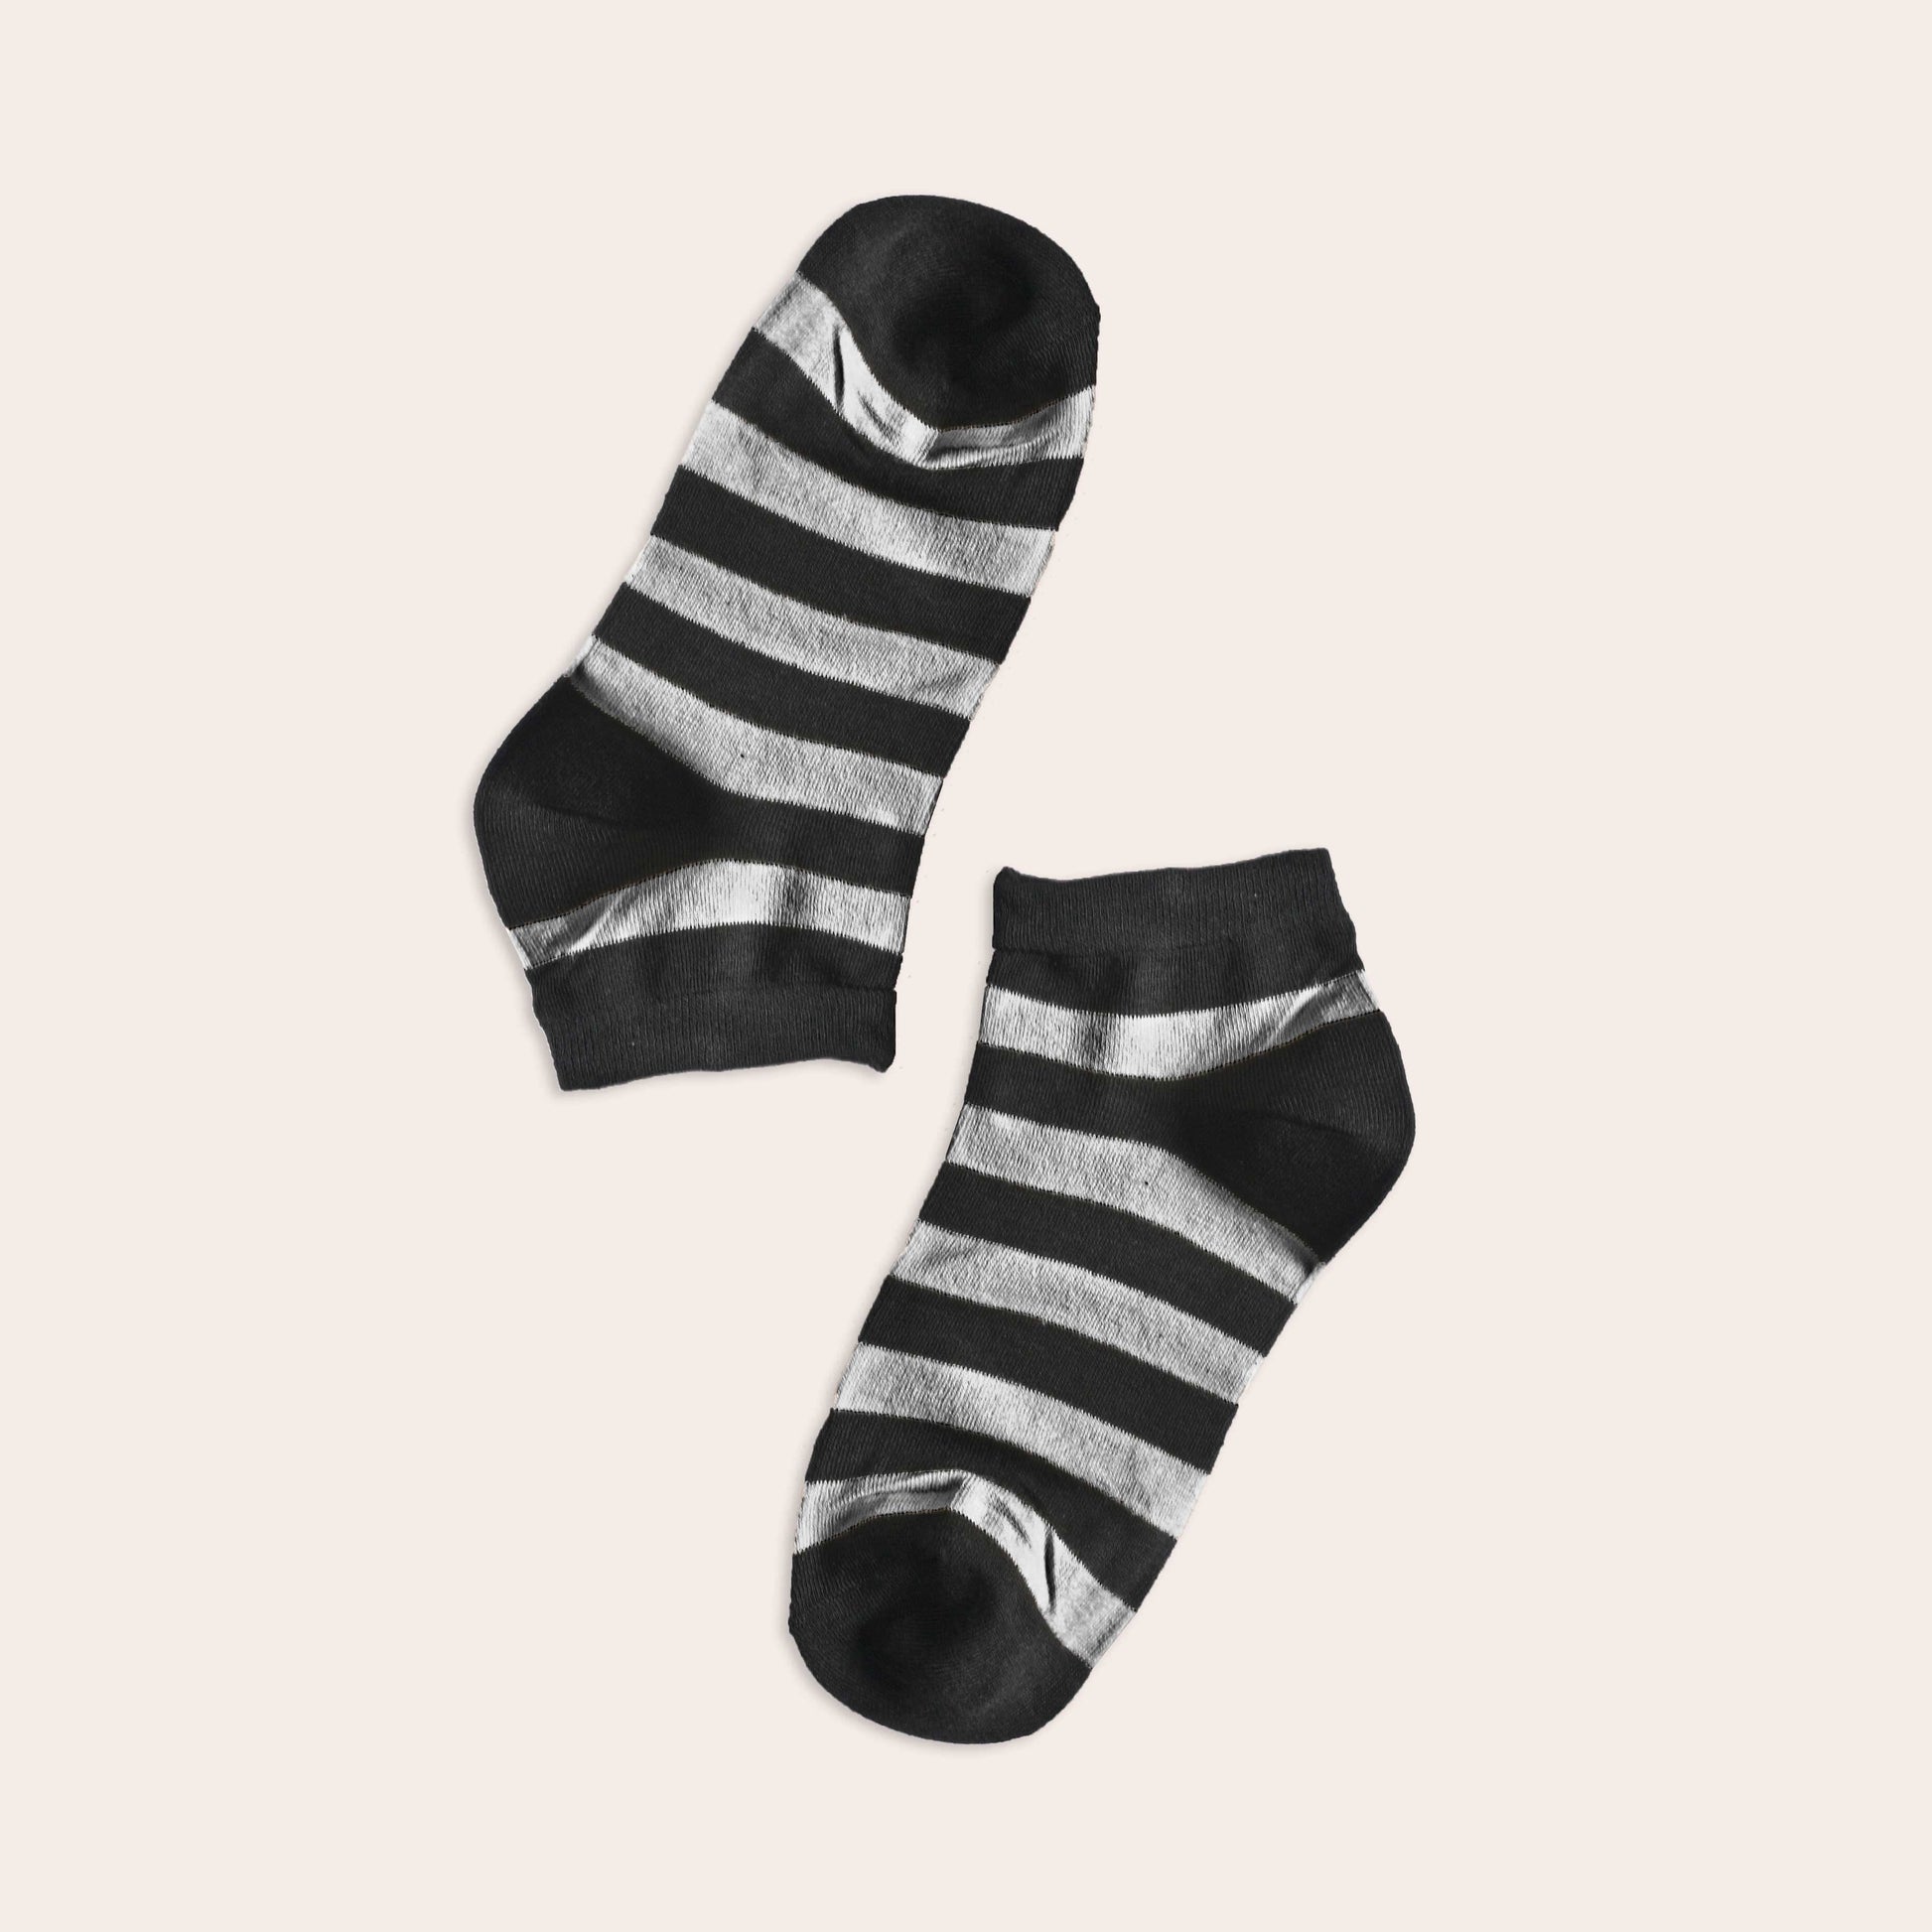 Tlia Men's Fashion Anklet Socks Socks SRL EUR 38-43 Charcoal D1